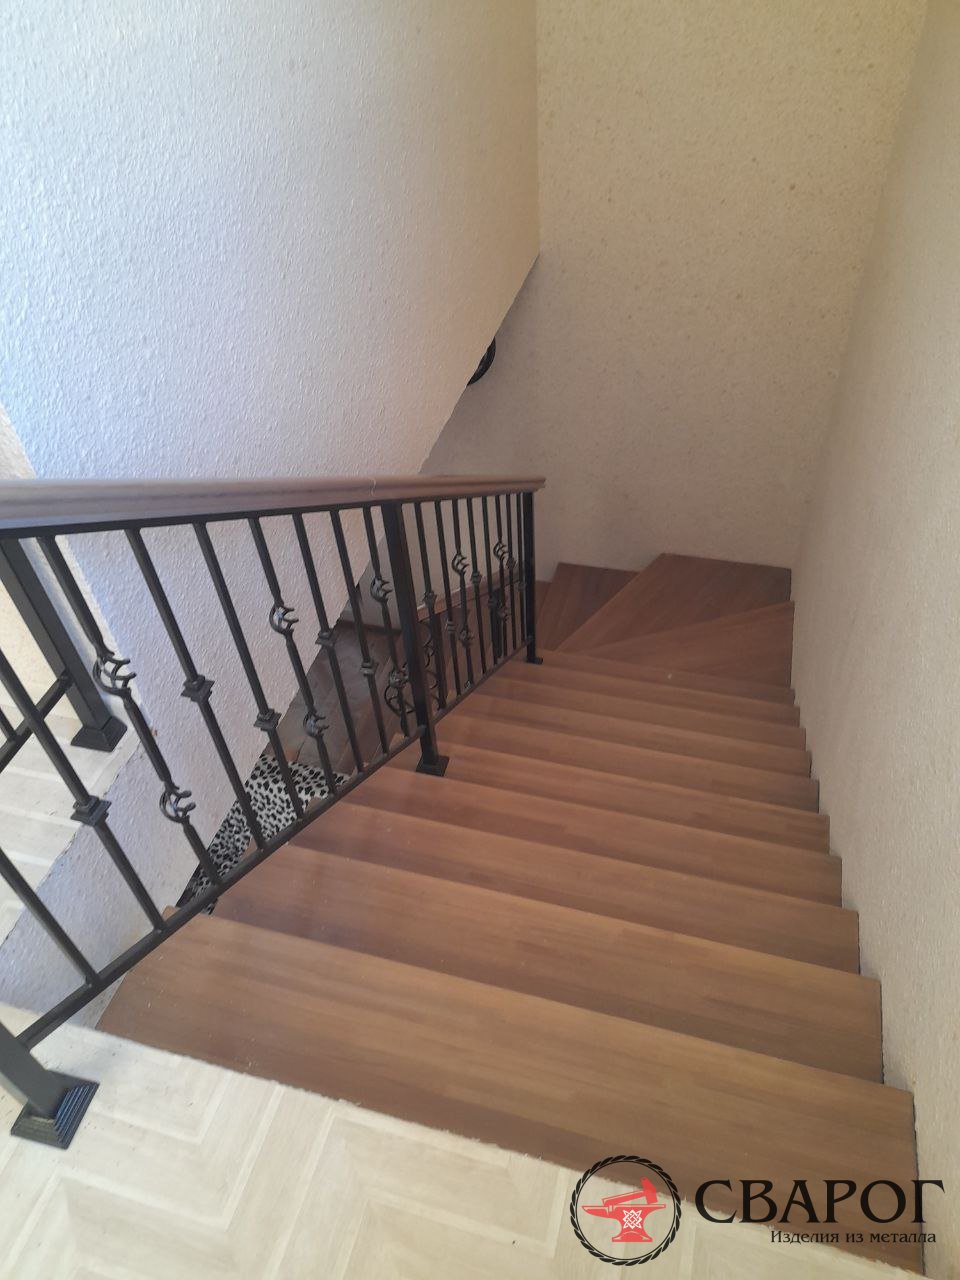 Лестница на 2 этаж — фото наших кованых перил. Красота, да и только